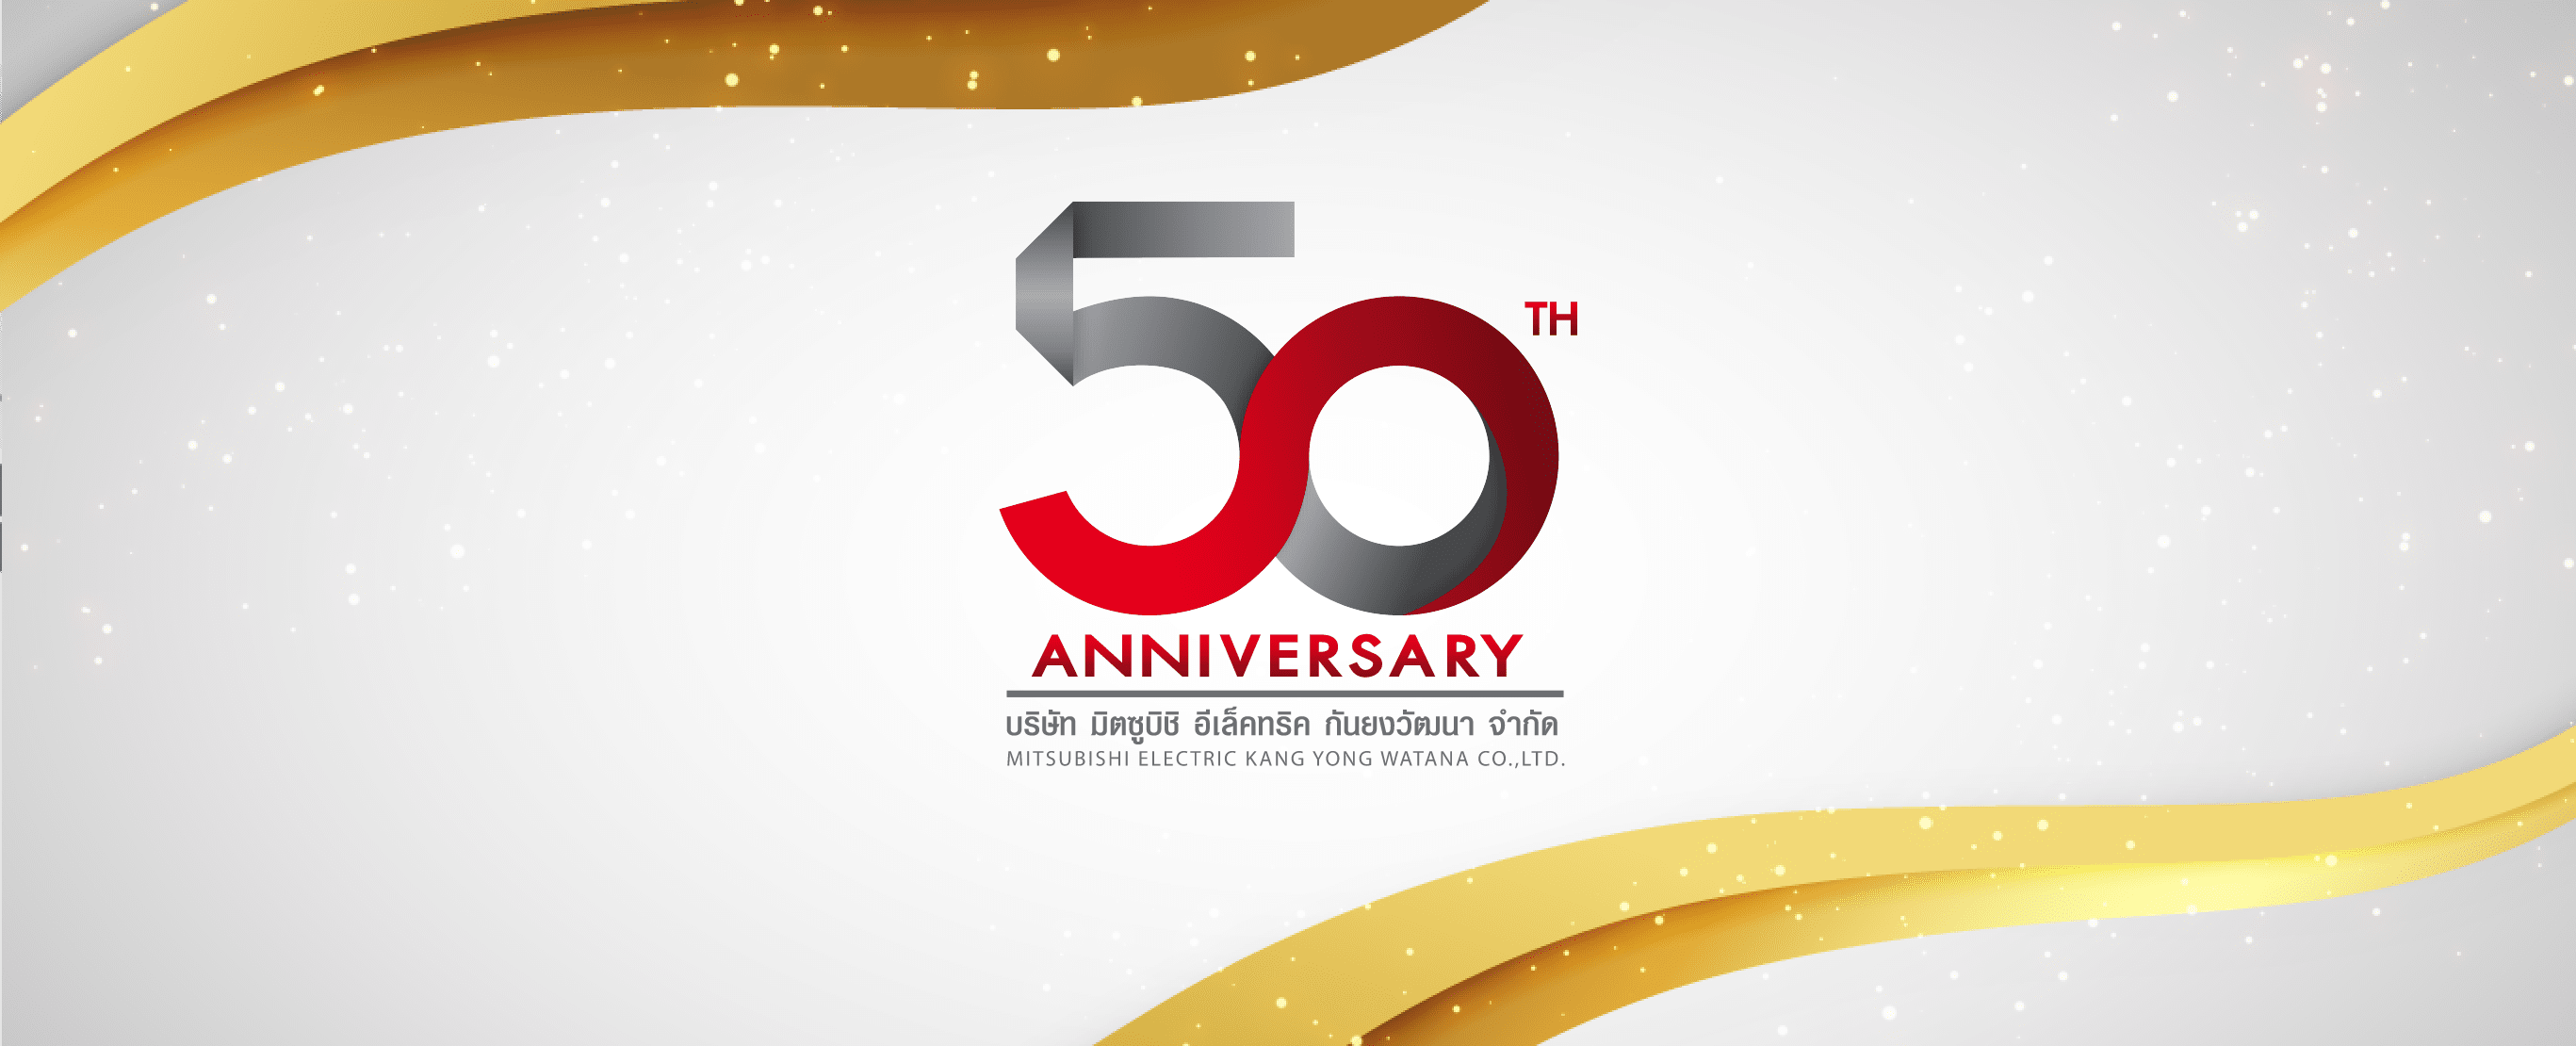 Anniversary 50 years Mitsubishi